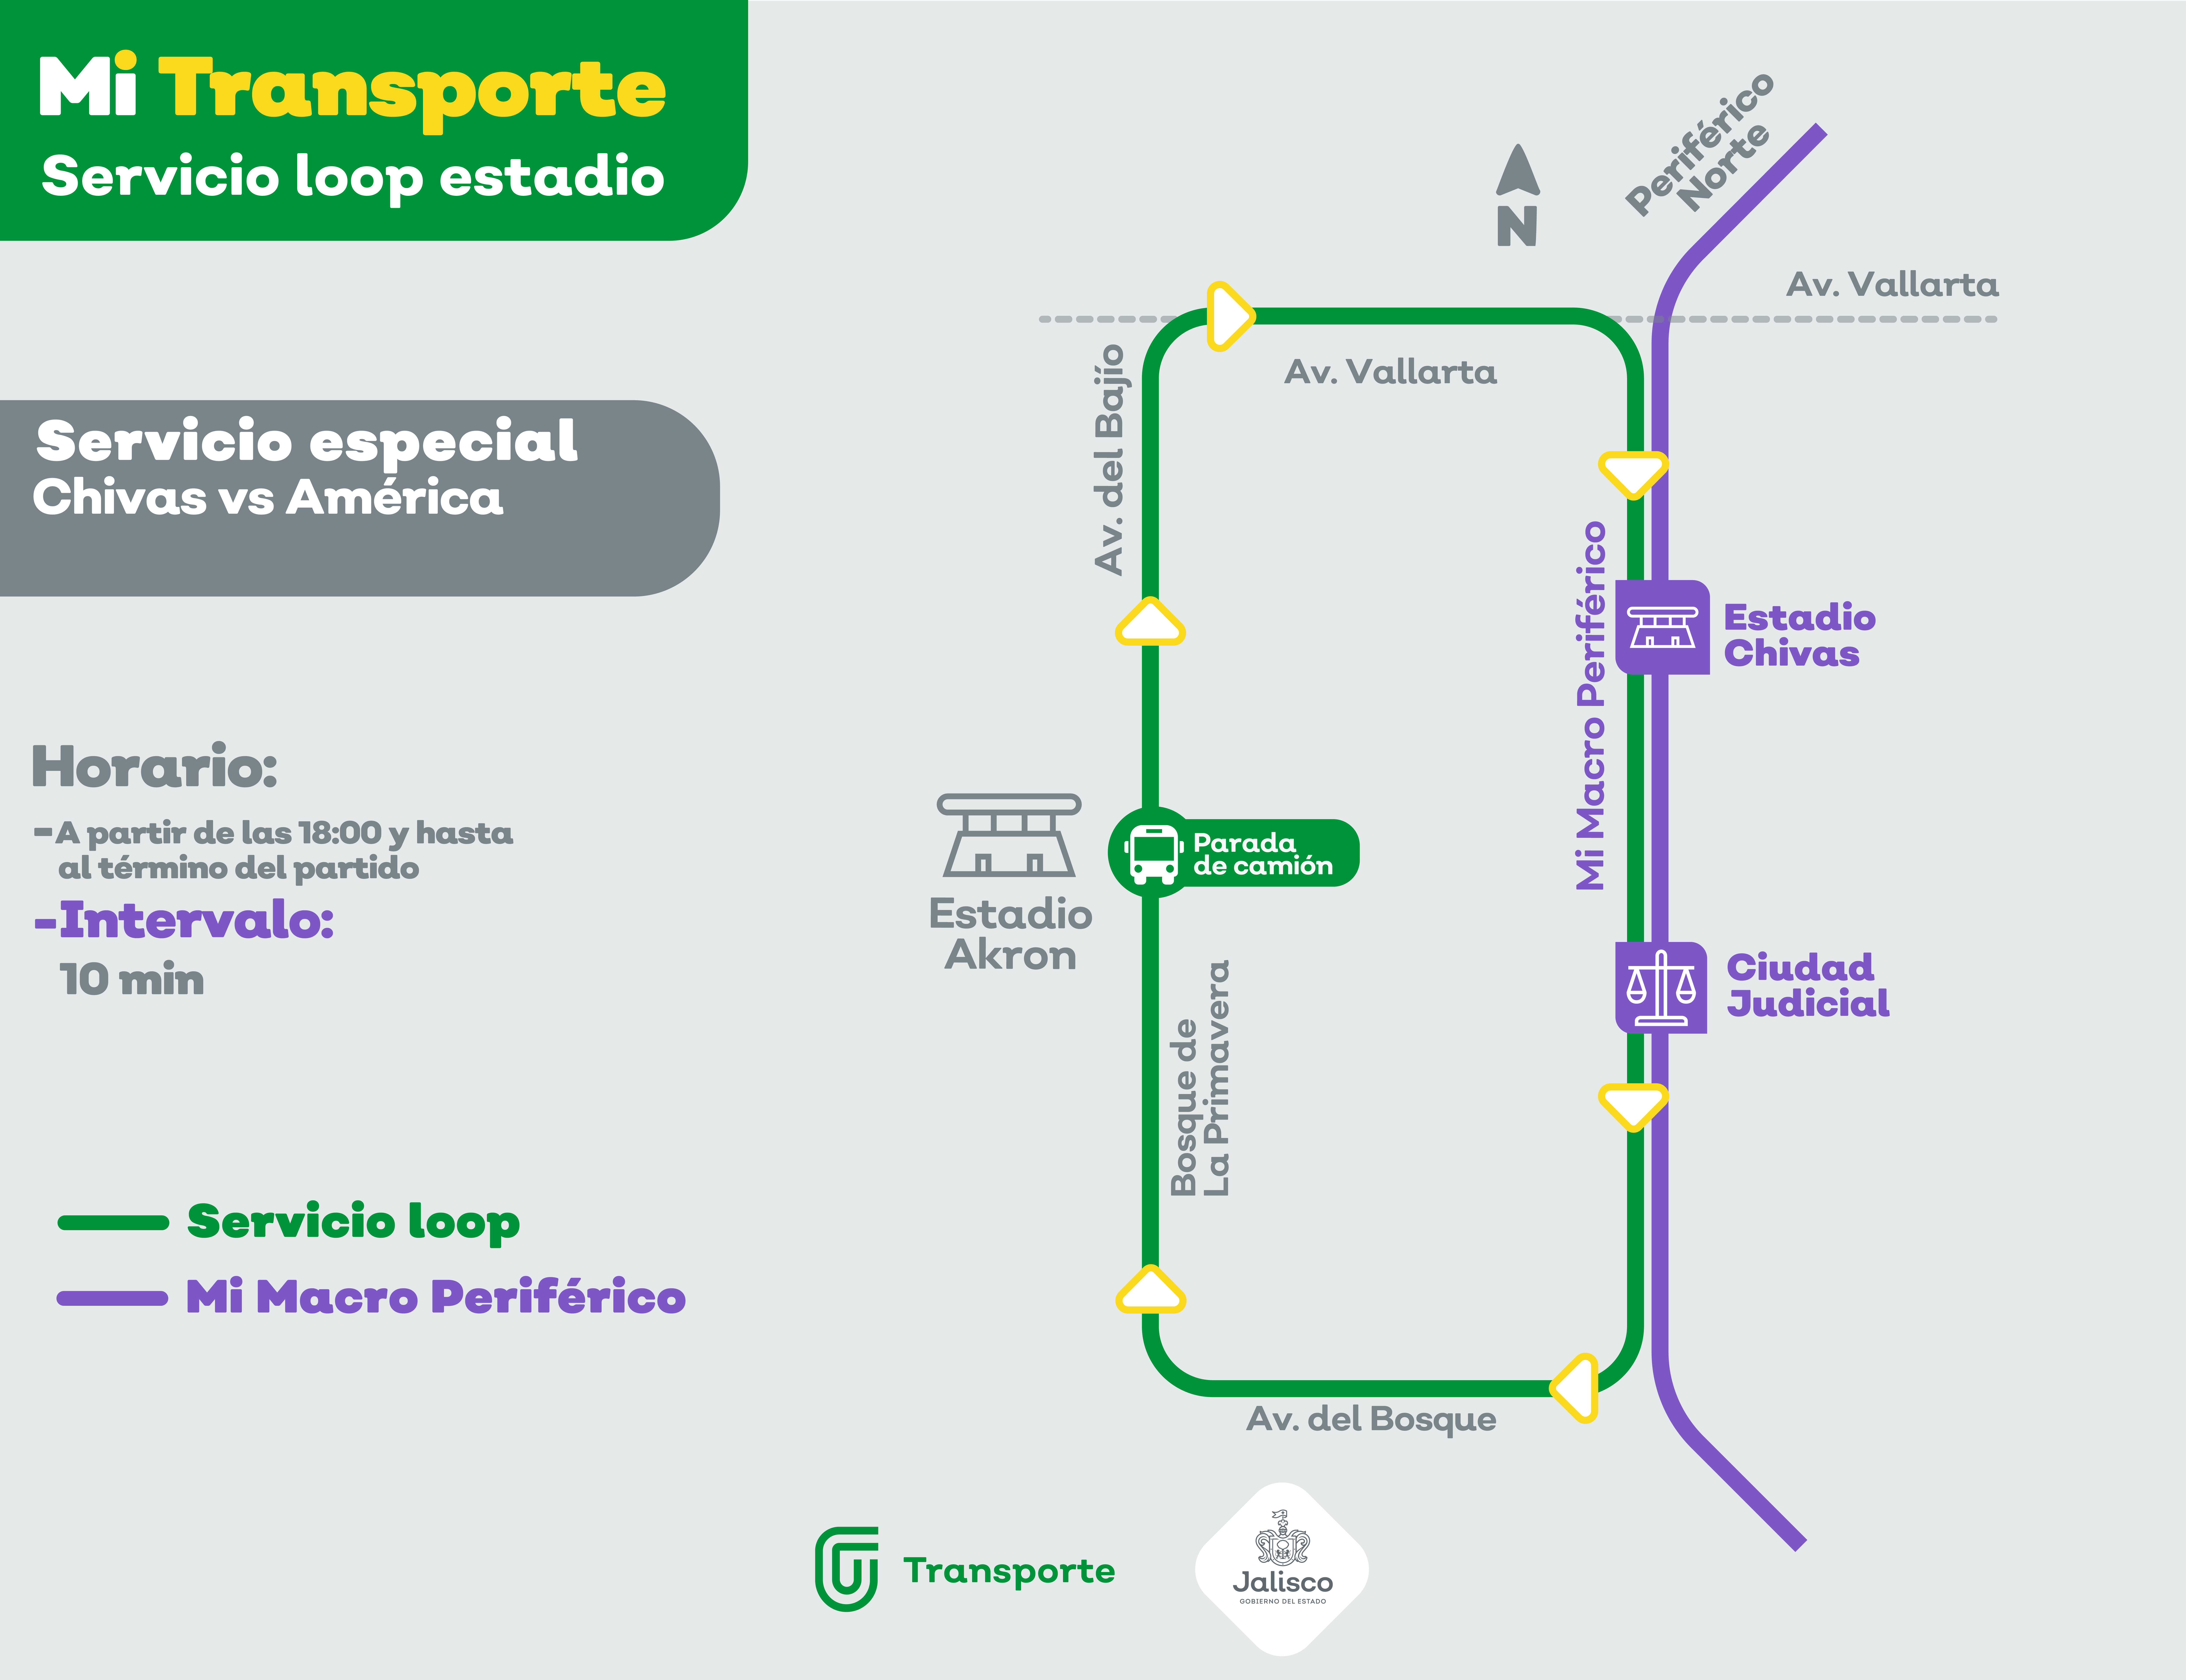 Habrá servicio especial de transporte público para el clásico Chivas-América